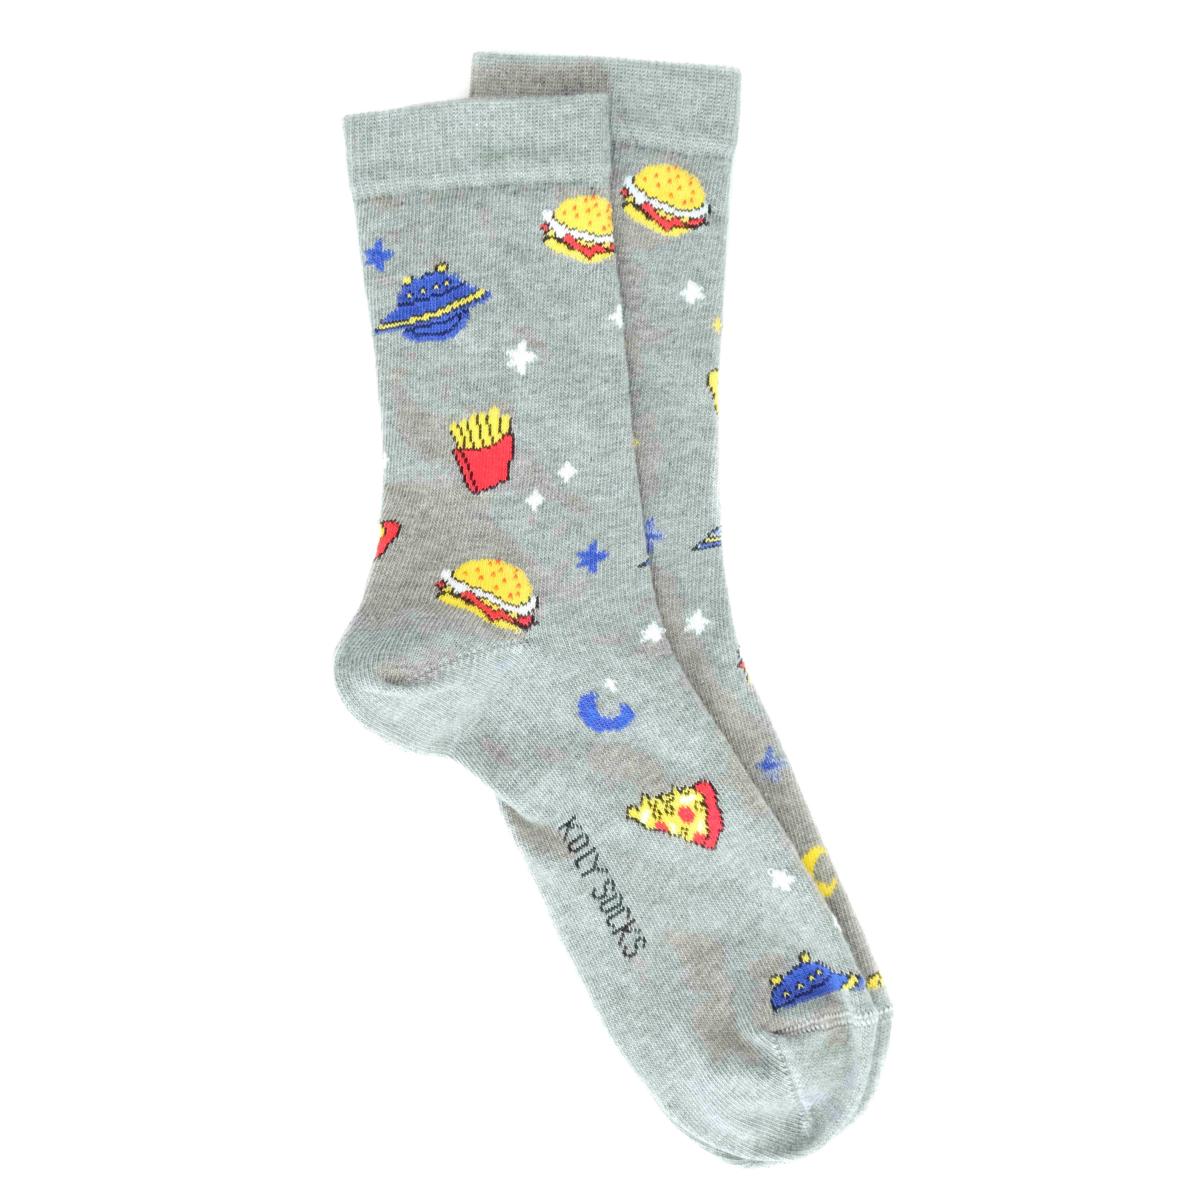 Selected image for KOLY SOCKS Dečije čarape Fast food svetlosive